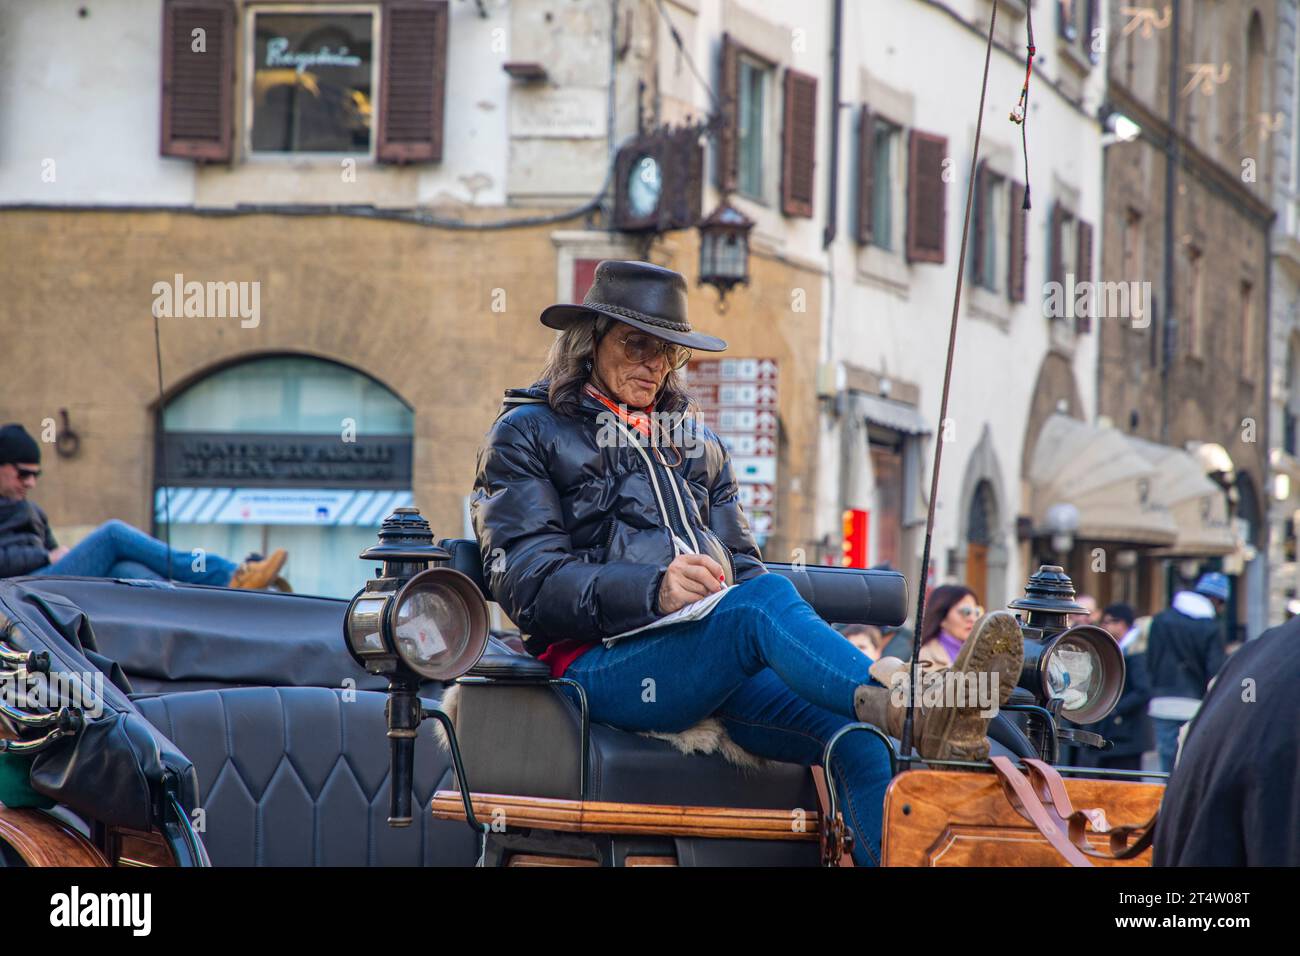 Florence, Italie : un coachman sur une voiture sur la Piazza del Duomo à Florence, la capitale de la région toscane en Italie. Banque D'Images